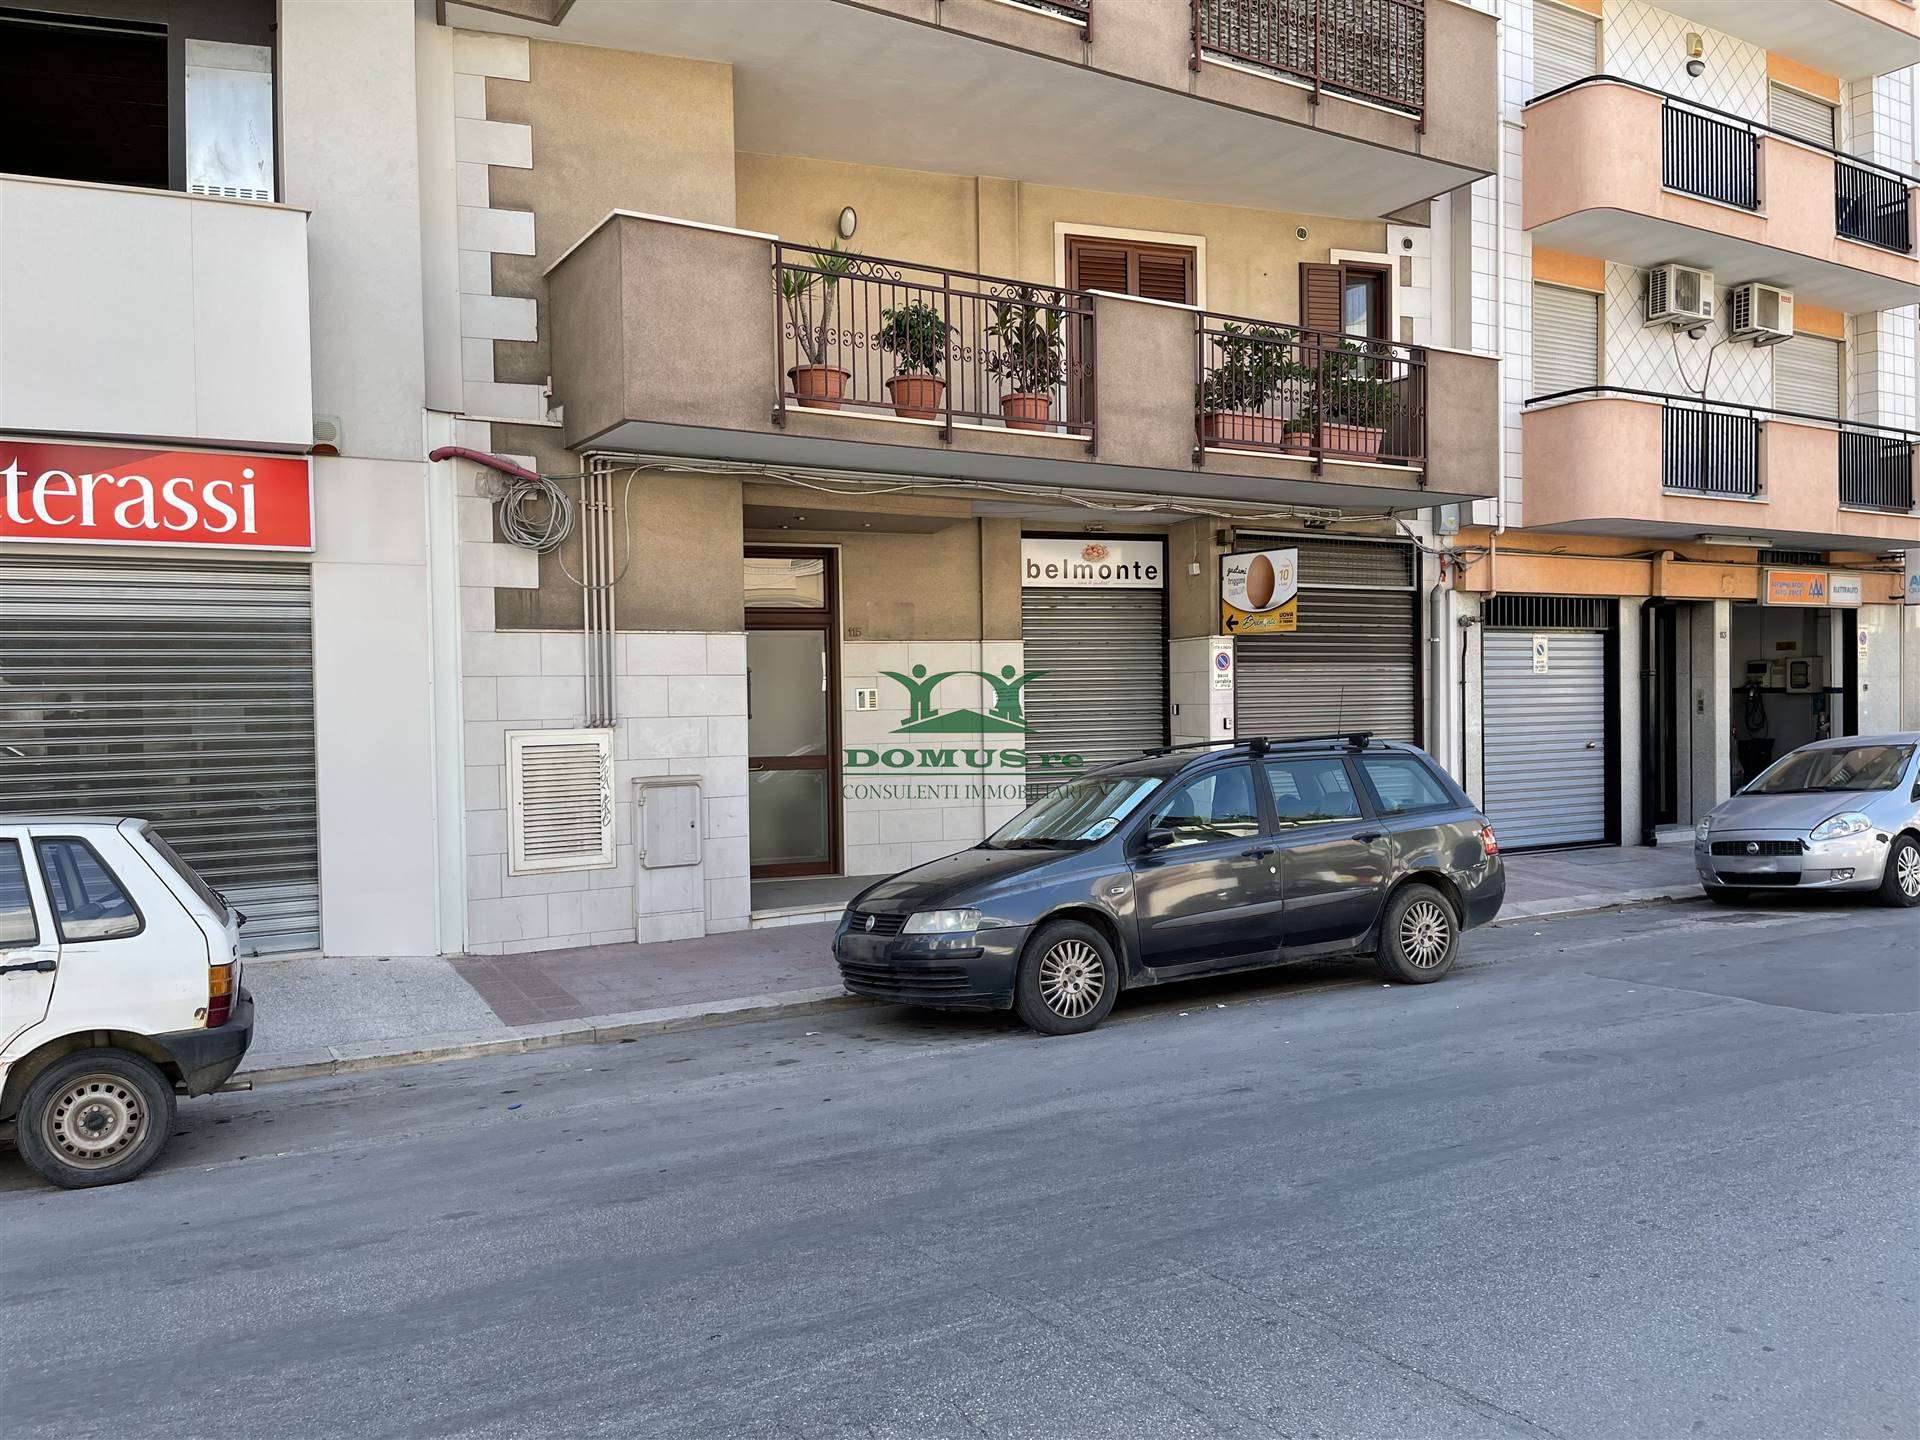 Immobile Commerciale in affitto a Andria, 1 locali, zona Località: SEMICENTRO, prezzo € 400 | CambioCasa.it